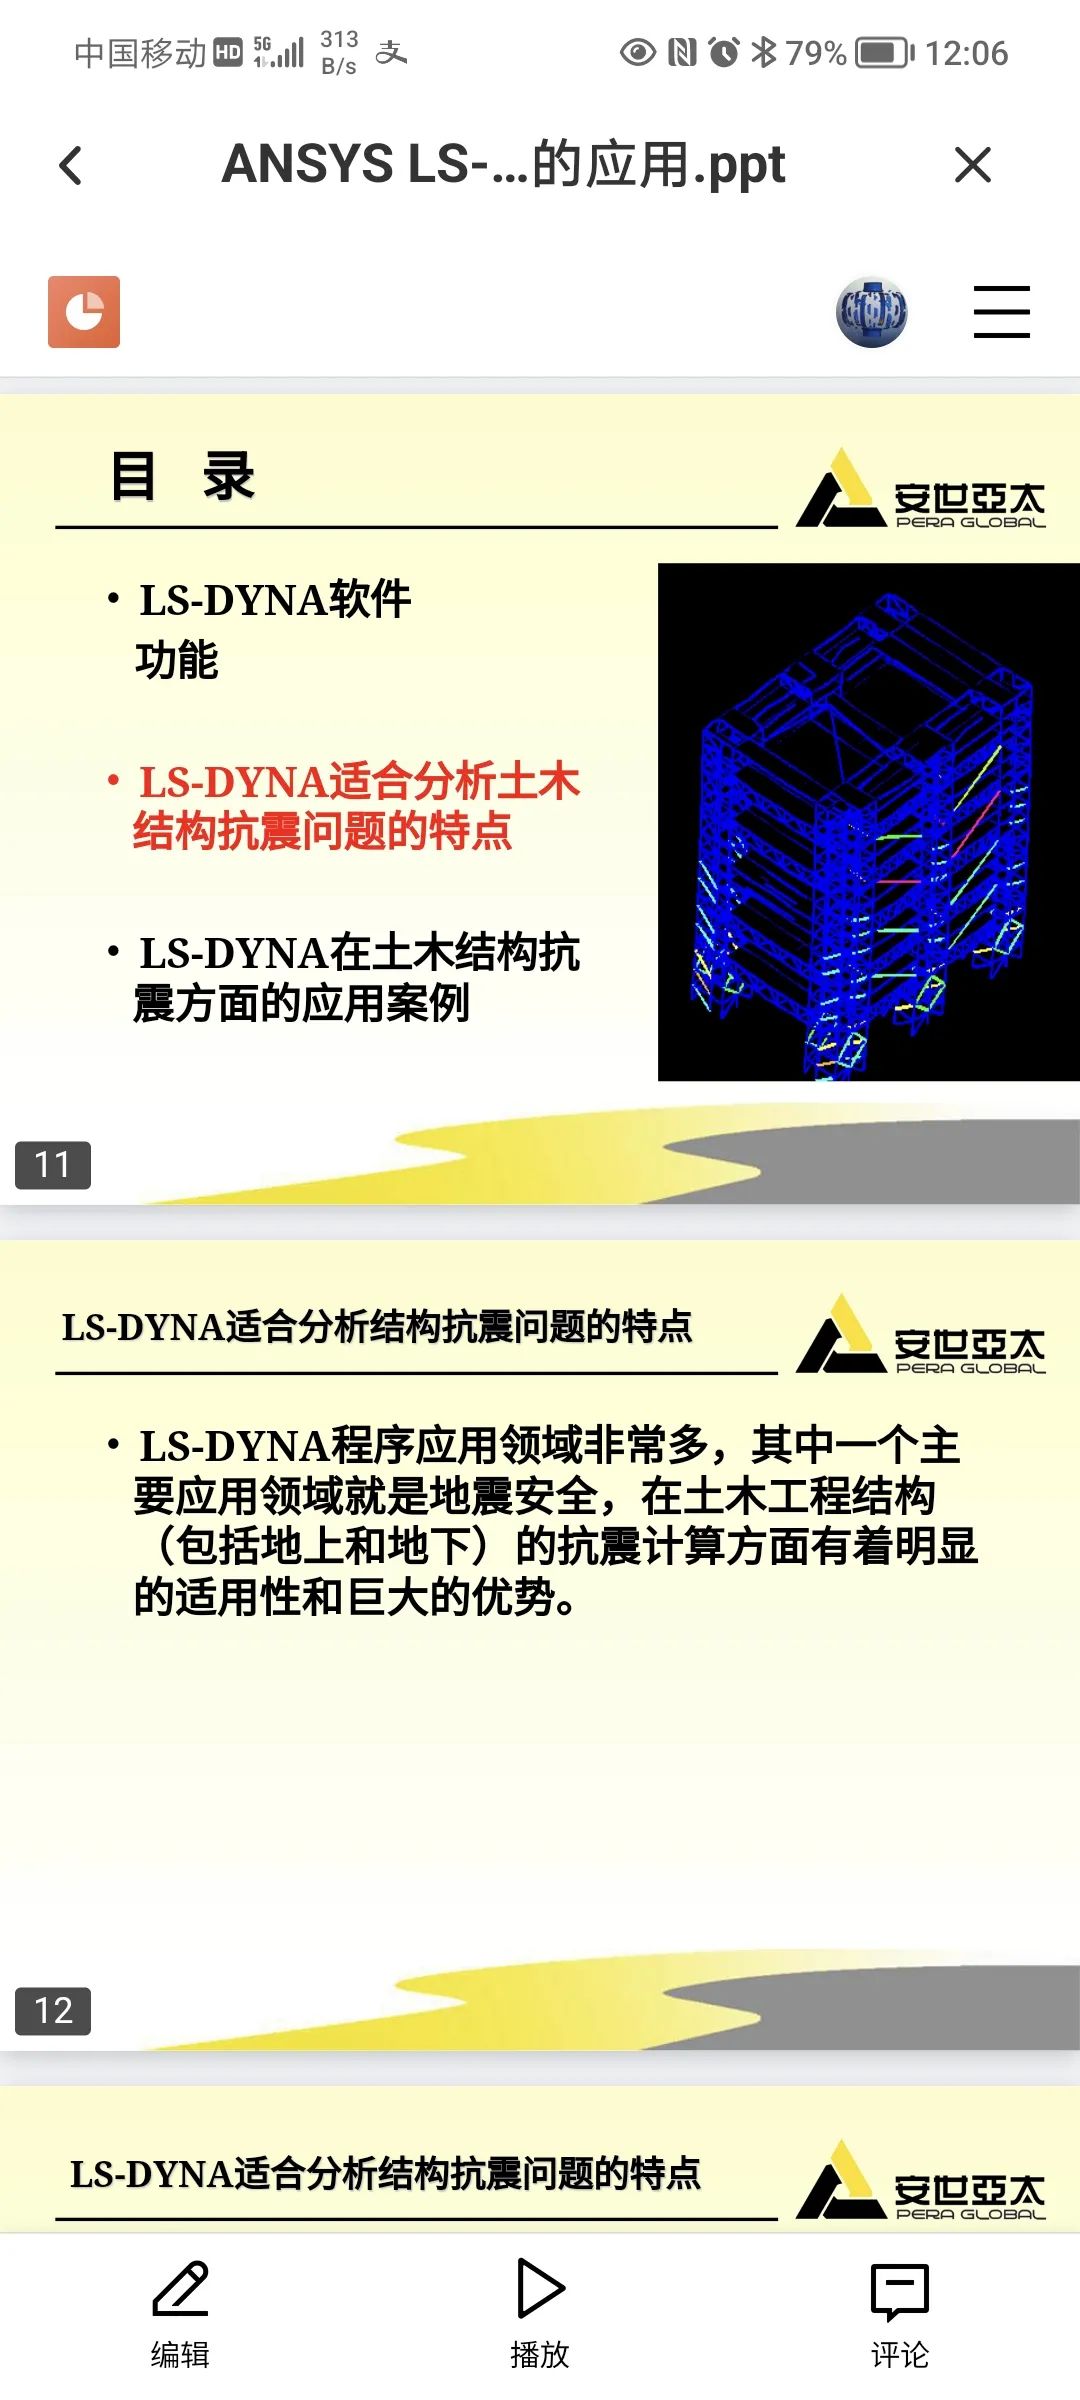 ANSYS LSDYNA在土木结构抗震中的应用的图6